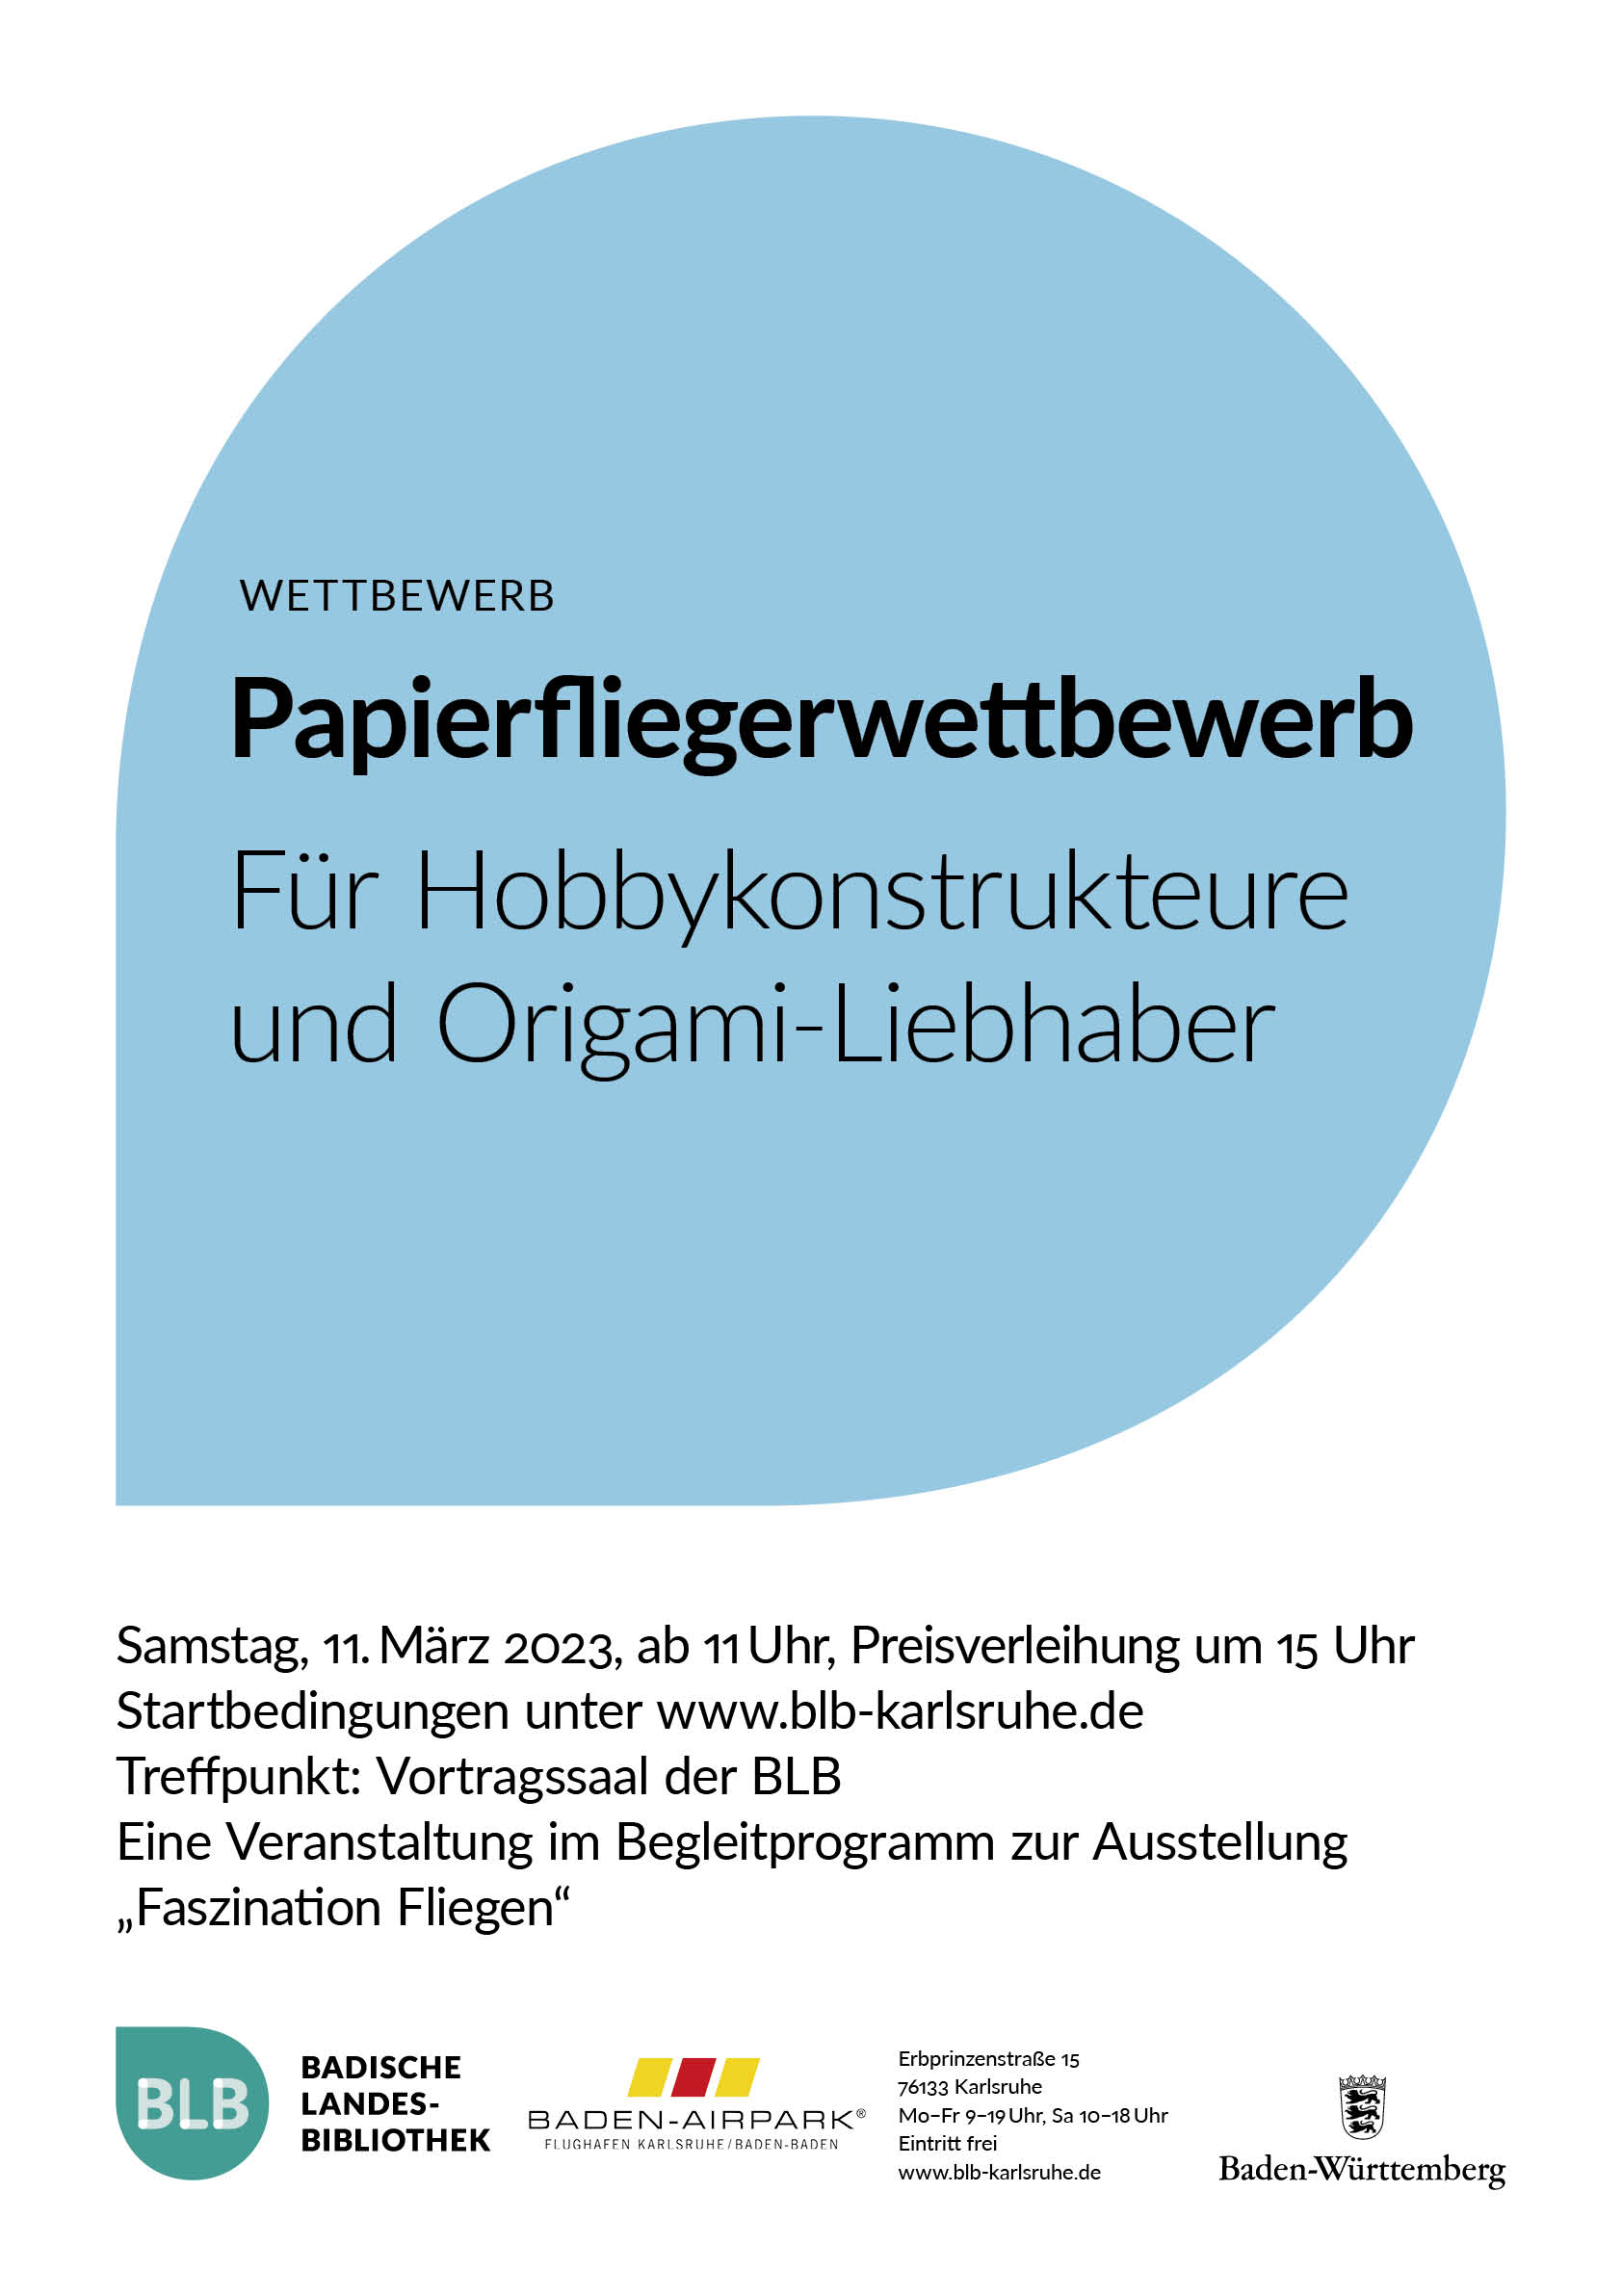 Zu sehen ist ein blaues Monogon mit der Aufschrift: "Papierfliegerwettbewerb. Für Hobbykonstrukteure und Origami-Liebhaber." Der Wettbewerb findet am Samstag, den 11. März 2023 ab 11 Uhr statt, die Preisverleihung ist um 15 Uhr. Die Startbedingungen sind auf der Webseite aufgeführt. Treffpunkt ist der Vortragssaal der Badischen Landesbibliothek Karlsruhe. Die Veranstaltung ist ein Begleitprogramm zur Ausstellung "Faszination Fliegen".  